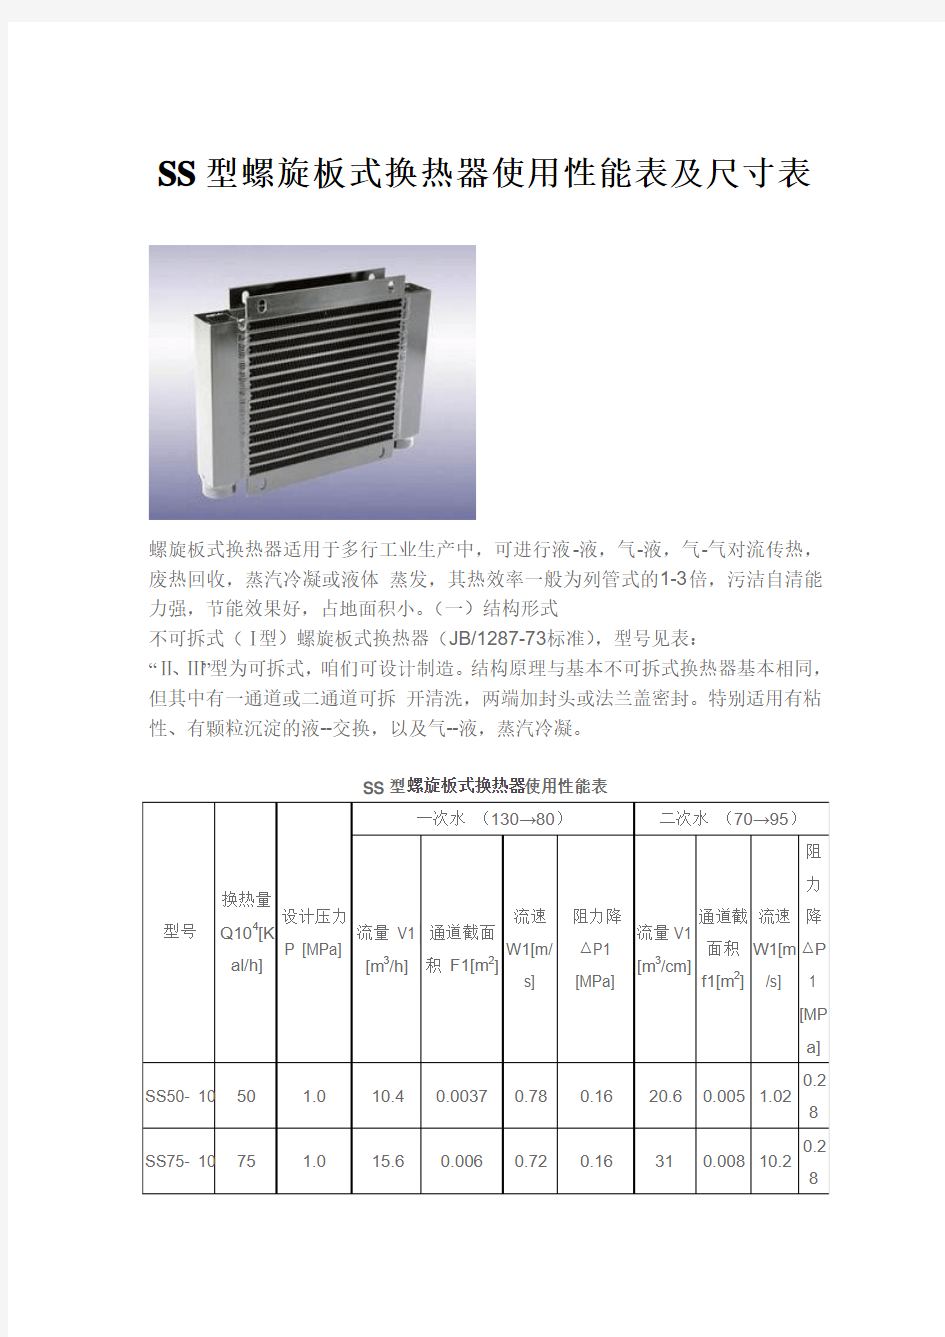 SS型螺旋板式换热器使用性能表及尺寸表